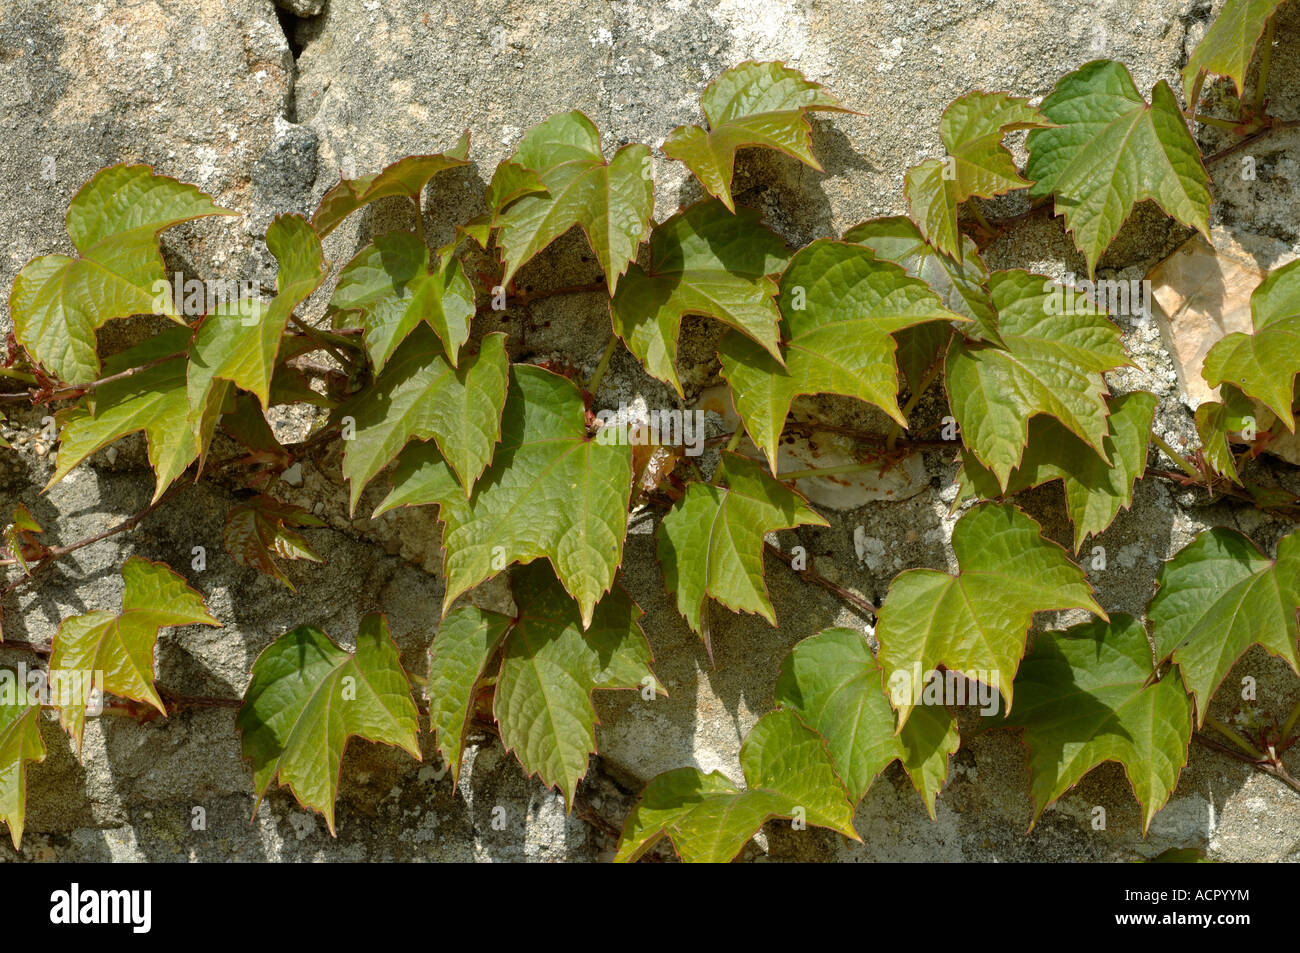 Boston ivy Parthenocissus tricuspidata giovani gara fogliame a molla su una parete di roccia calcarea Foto Stock